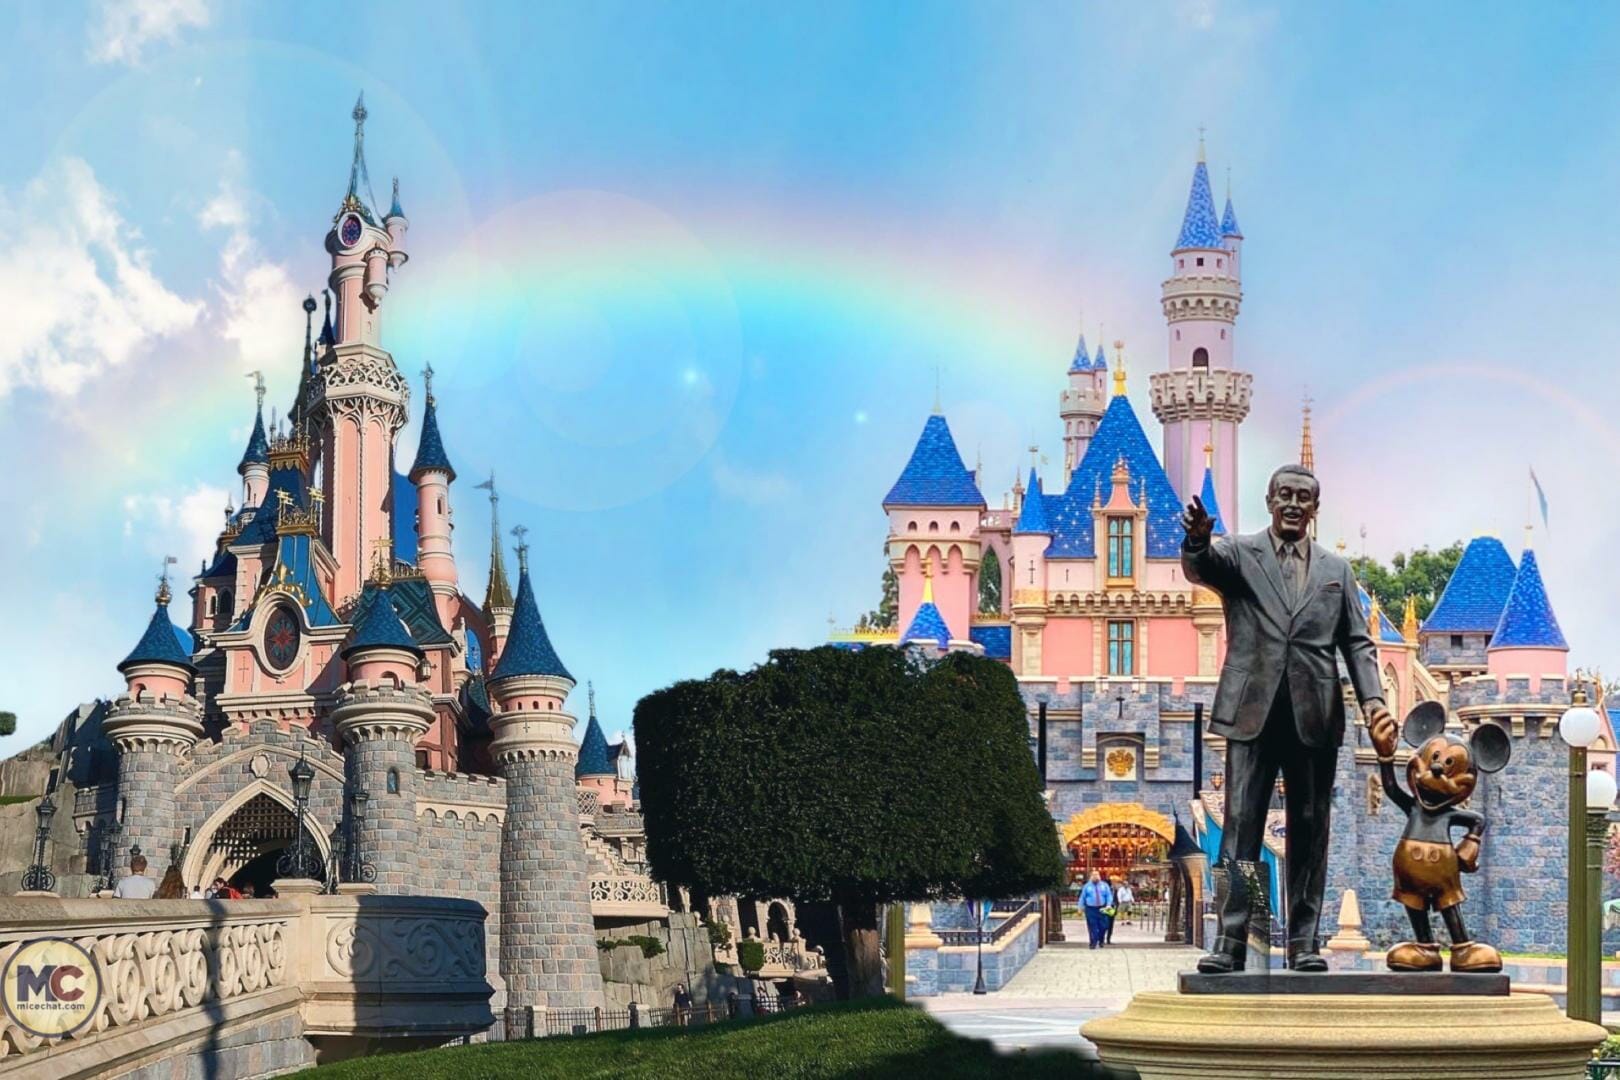 Is Disneyland in Paris or Florida?